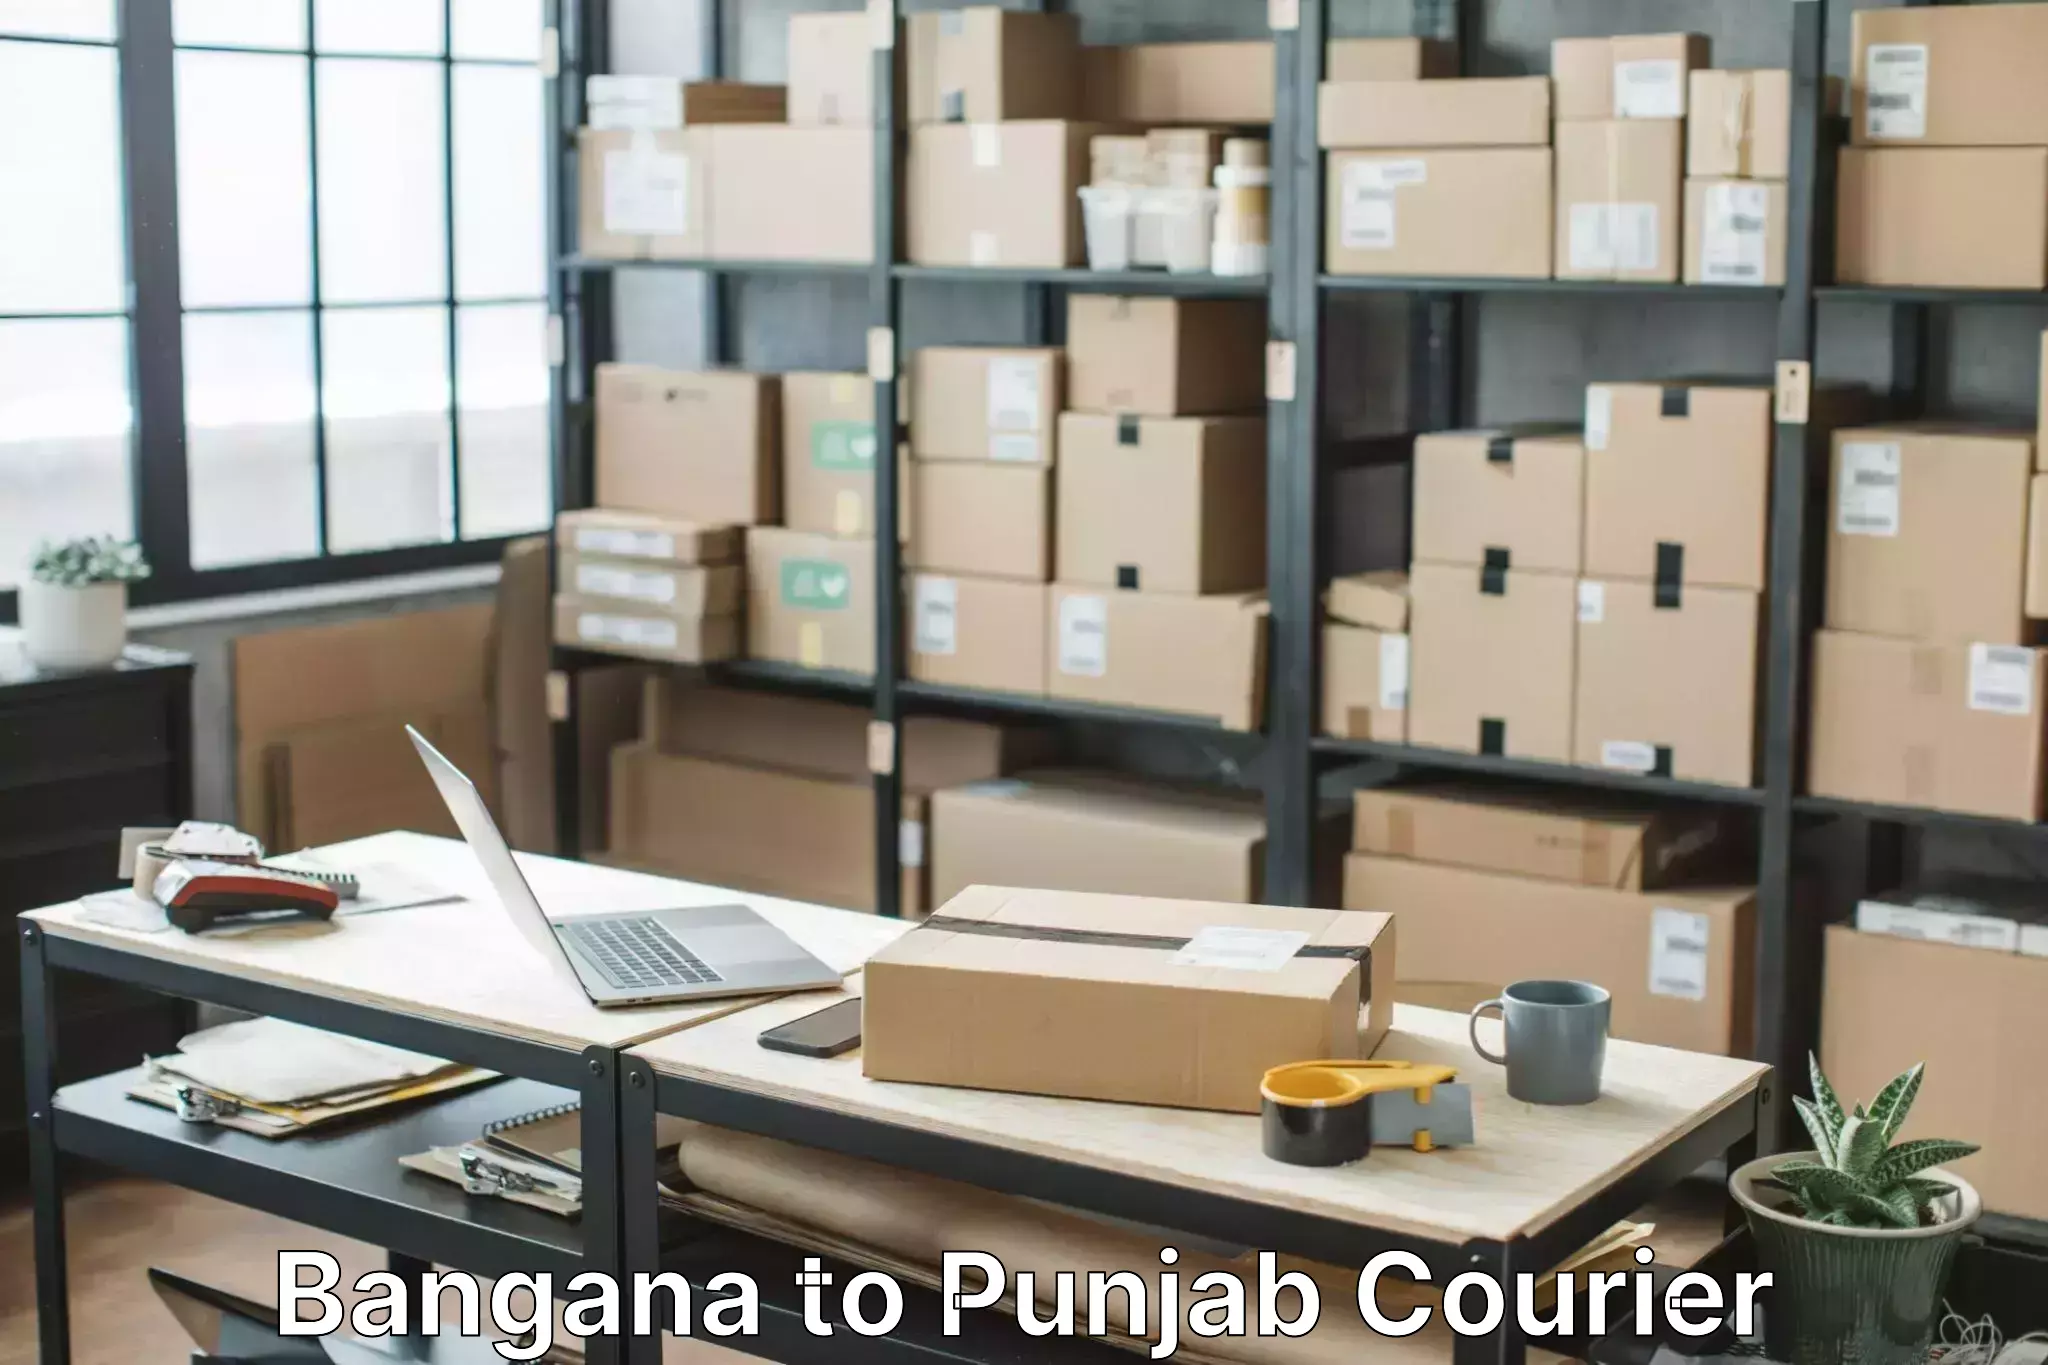 Specialized moving company Bangana to Central University of Punjab Bathinda